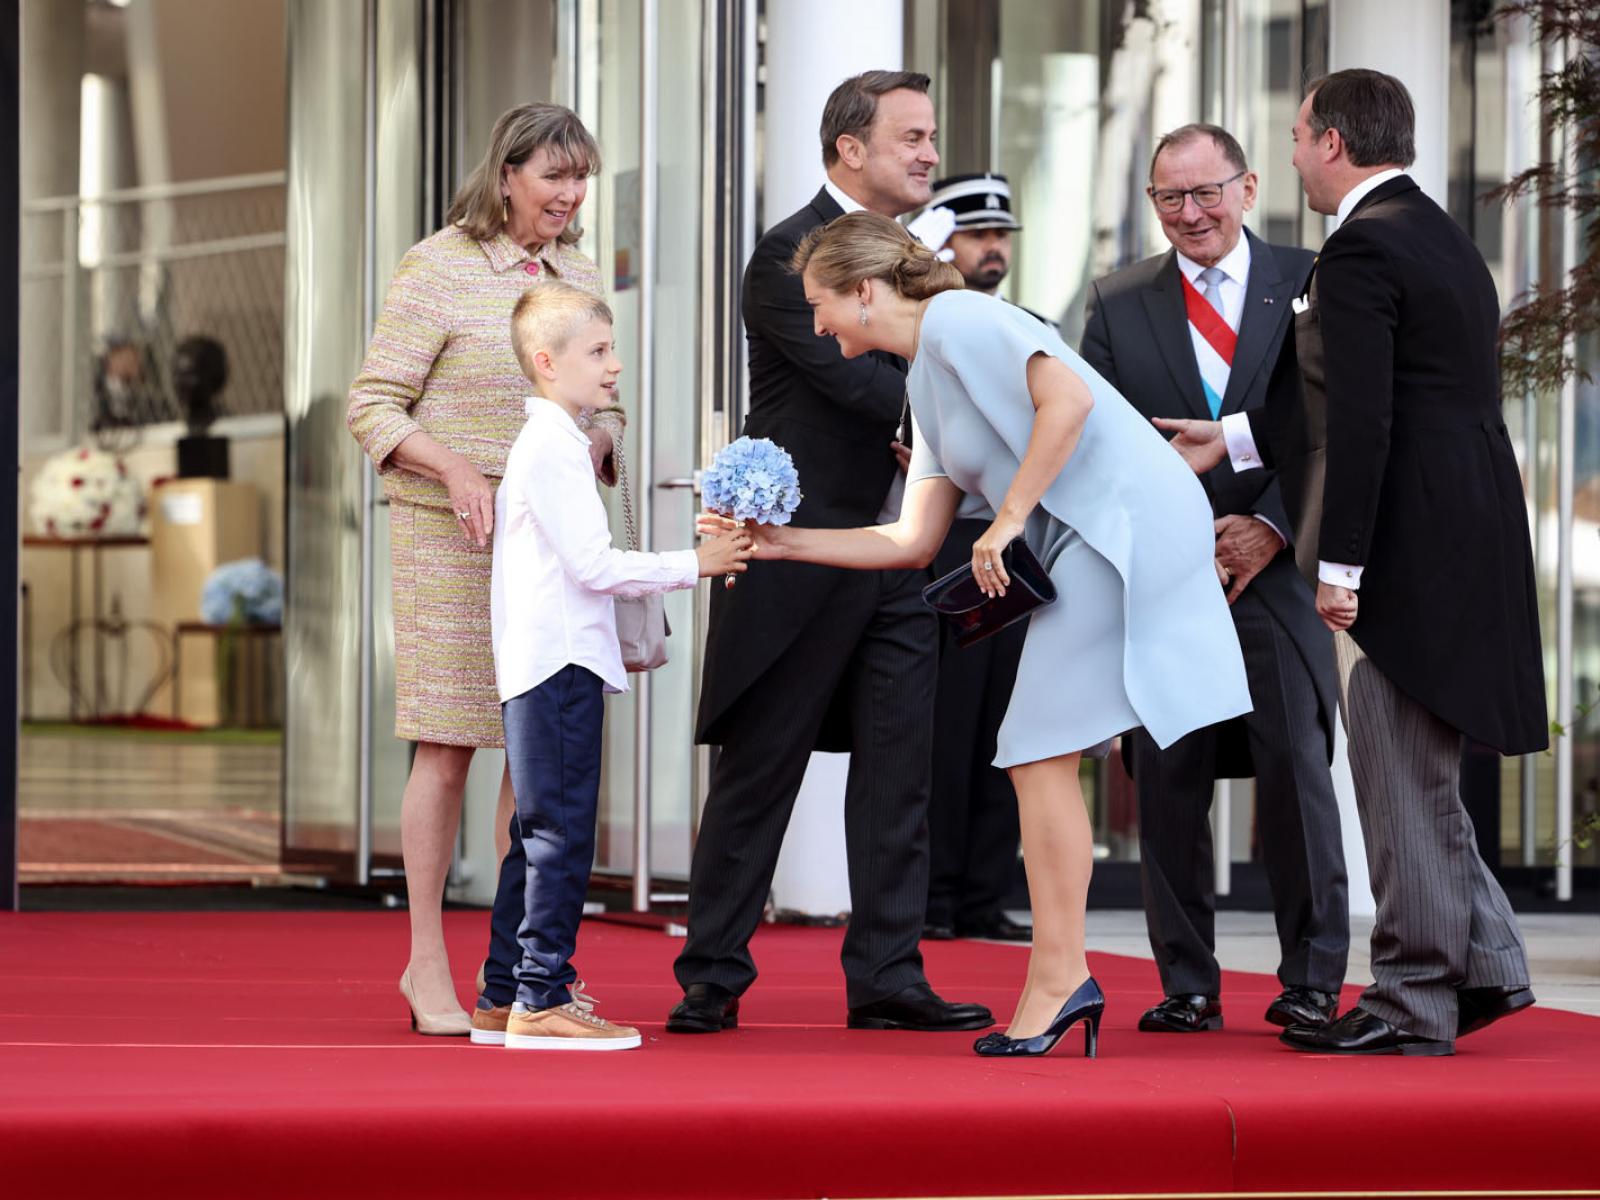 La Princesse Stéphanie reçoit un bouquet de fleurs d'un jeune garçon